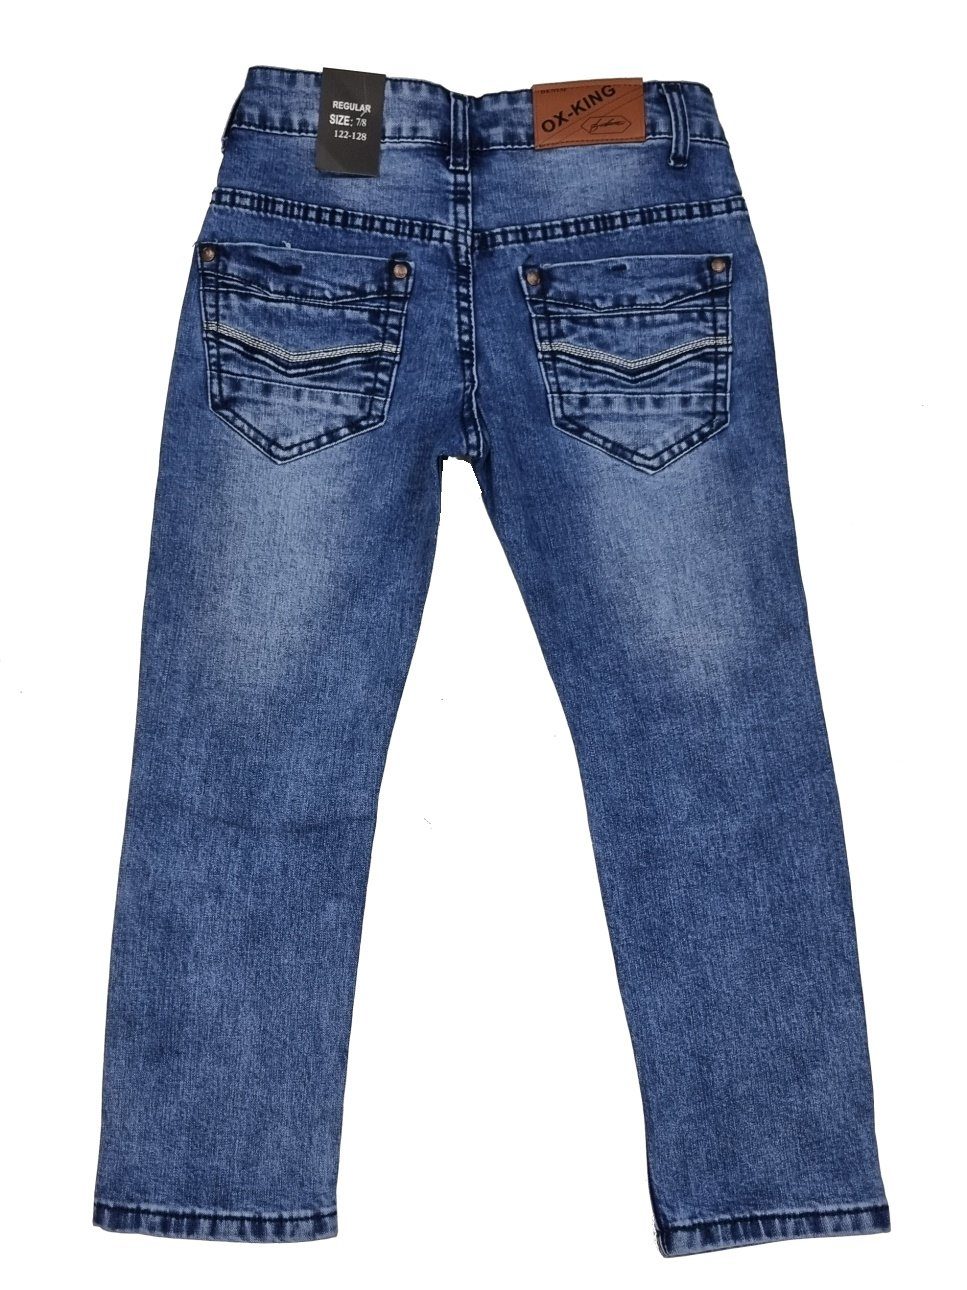 Jungen Kinder Hose Jeans Fashion Kinderhose Bequeme J626 Jeanshose, Jeans Boy